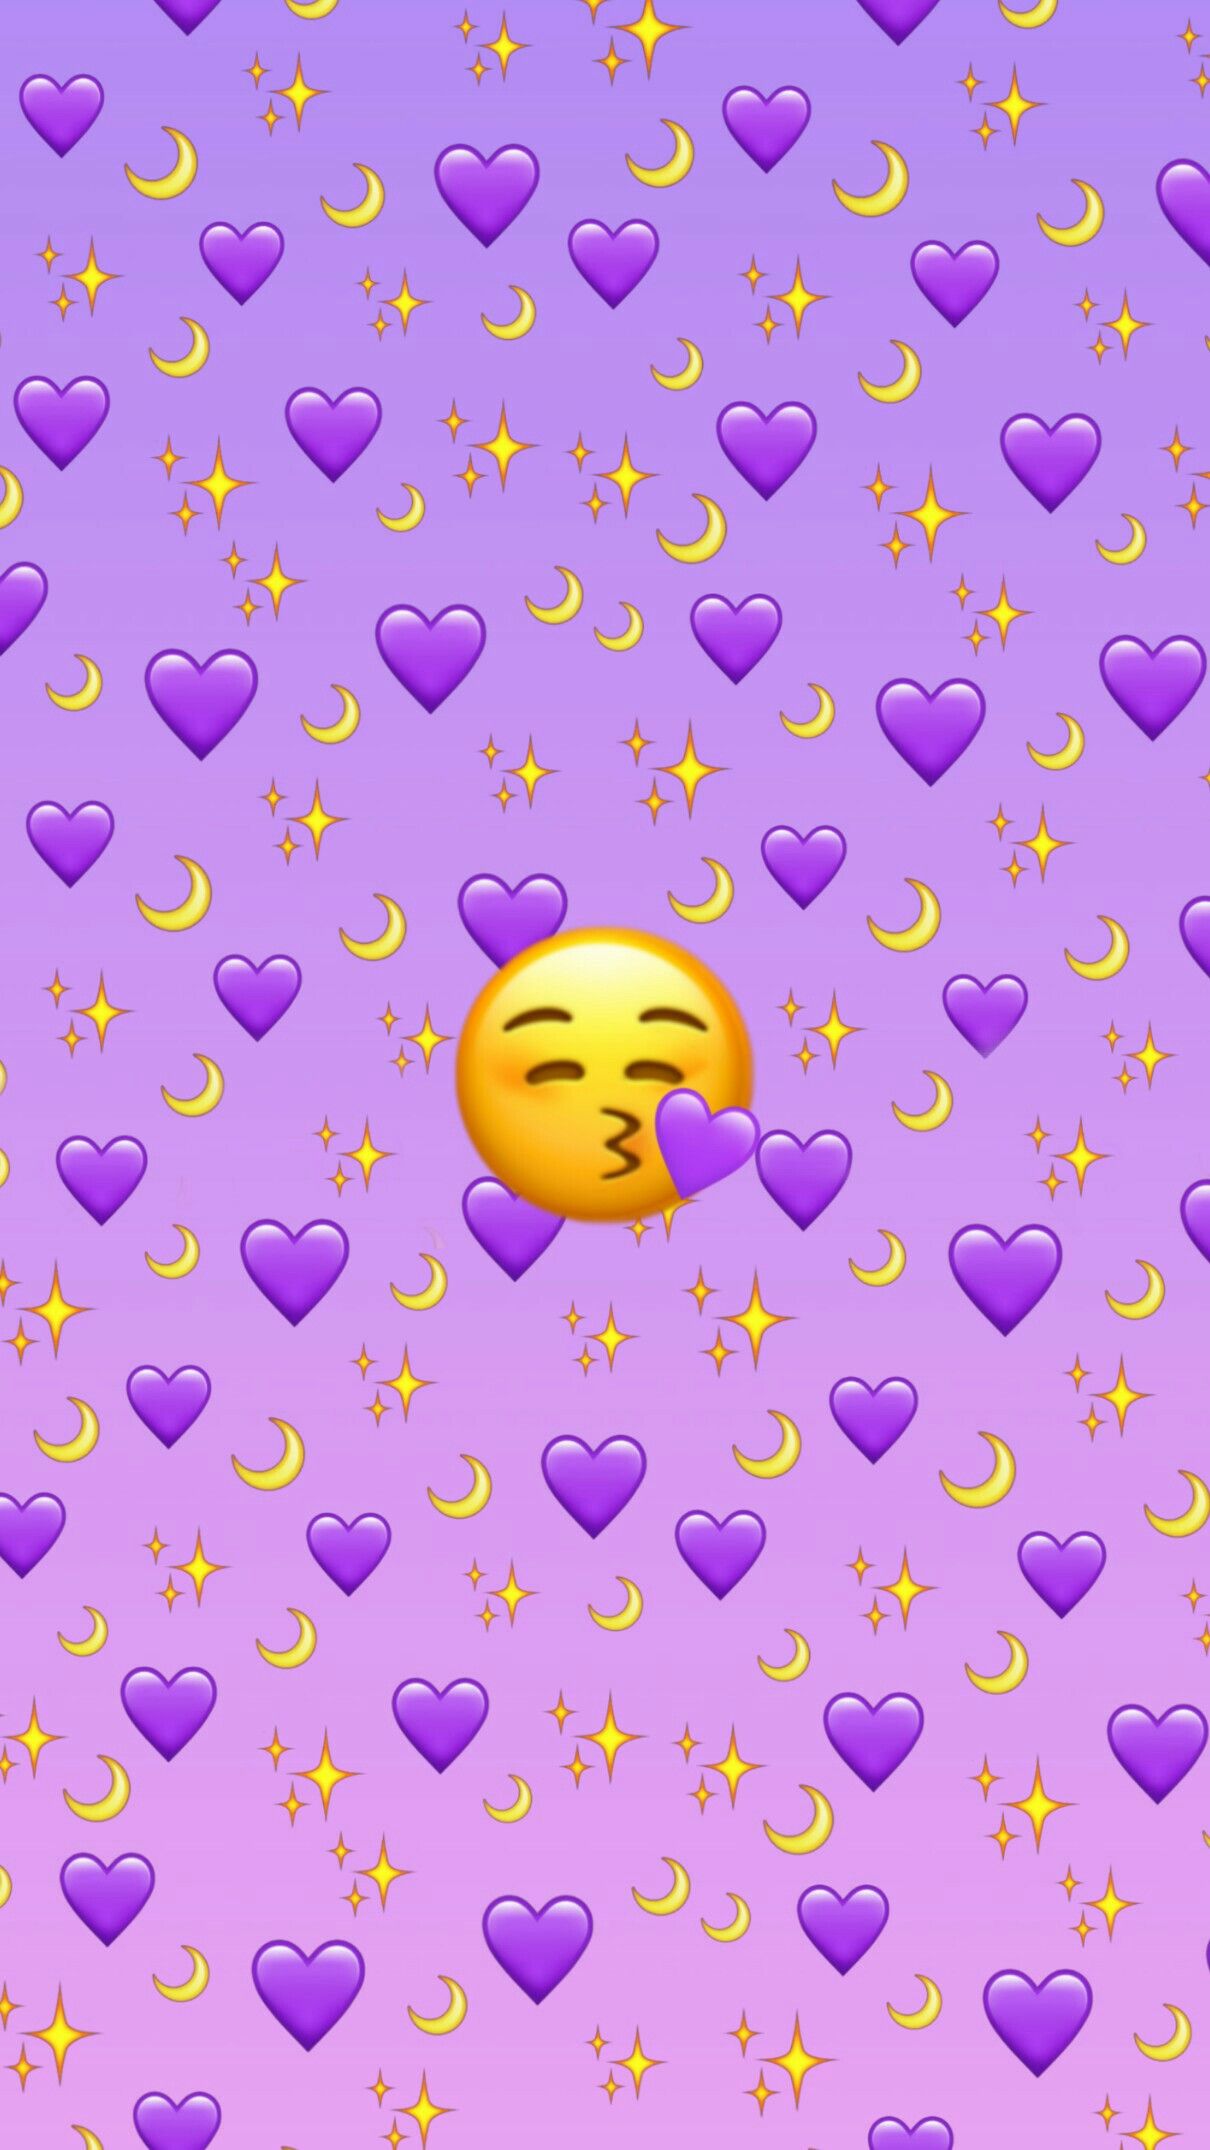 Hình nền Emoji tím đẹp mắt này sẽ làm cho chiếc điện thoại, máy tính bảng hoặc máy tính của bạn trở nên lịch sự và sang trọng hơn. Được thiết kế độc đáo và sử dụng màu tím quyến rũ, hình nền này là một không gian chỉ riêng cho bạn.